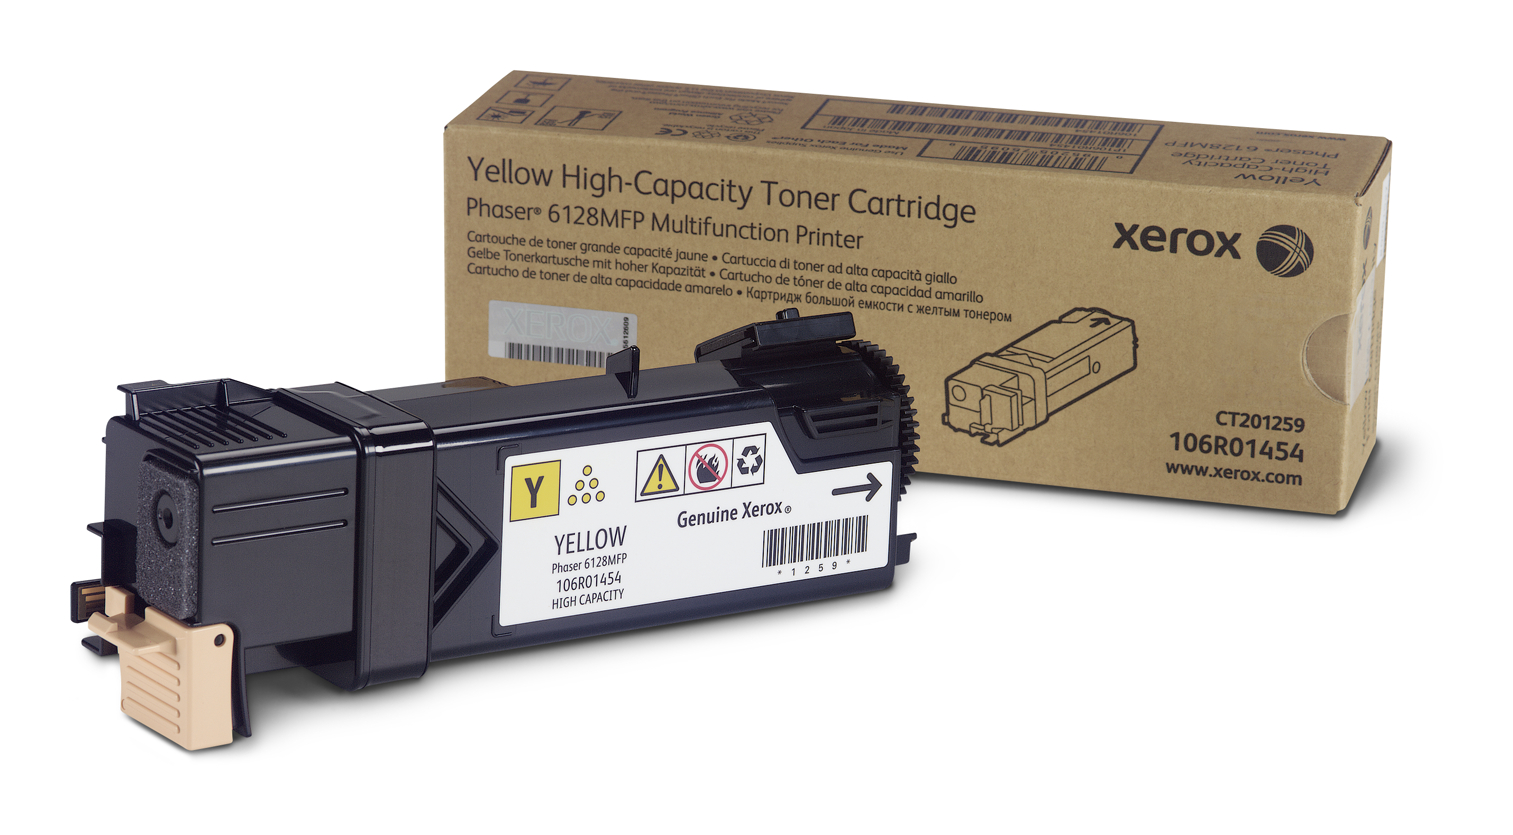 Yellow Toner Cartridge, Phaser 6128MFP 106R01454 Genuine Xerox Supplies